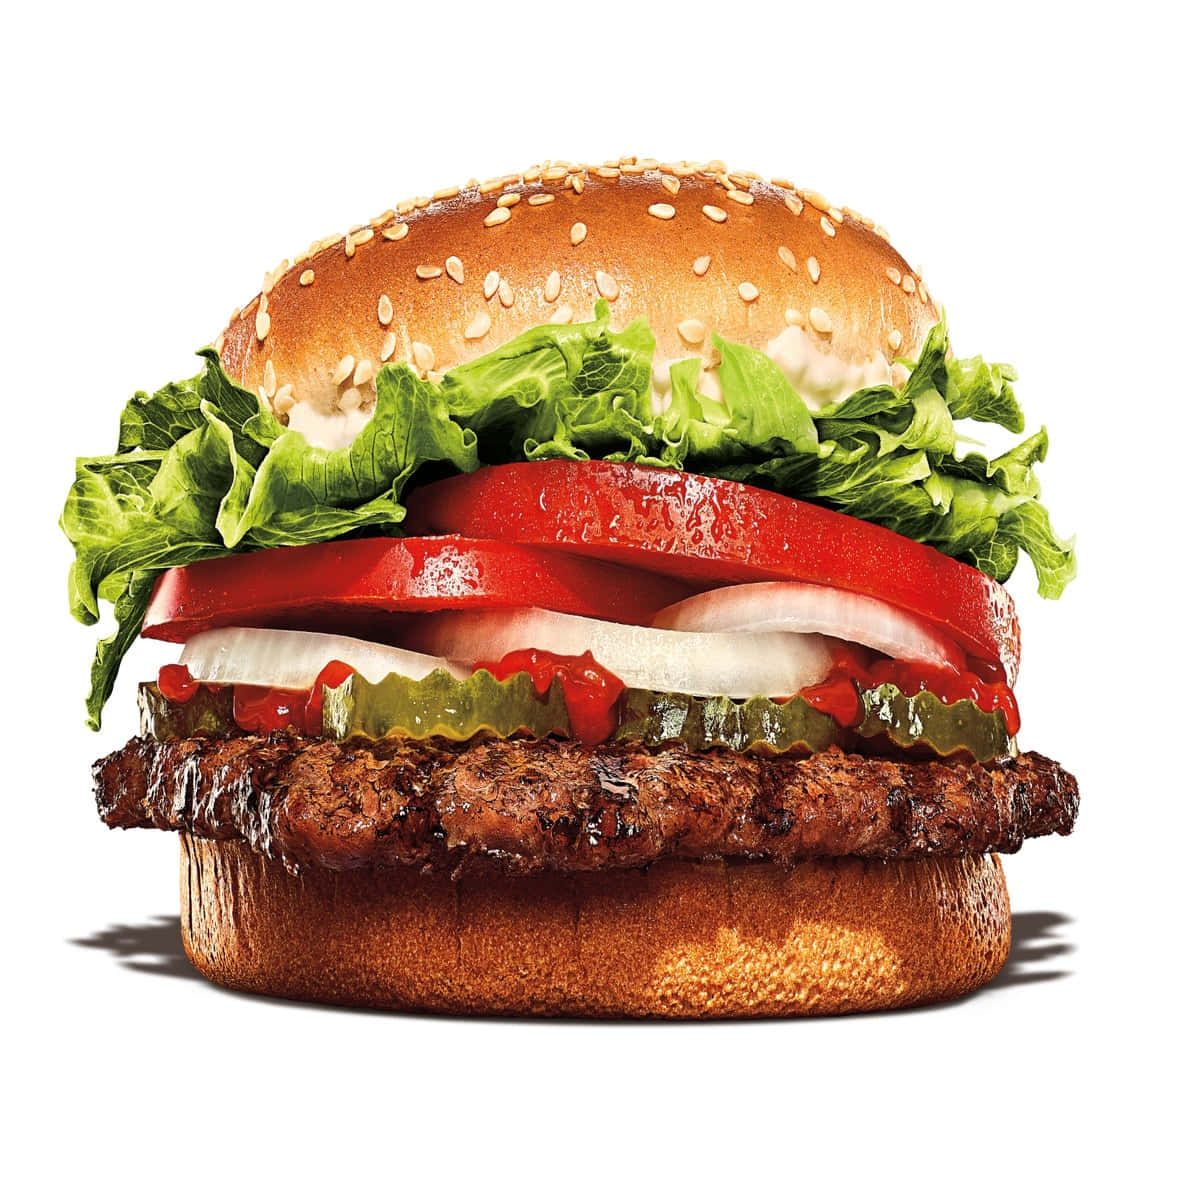 Stillensie Ihre Gelüste Mit Den Klassikern Von Burger King!